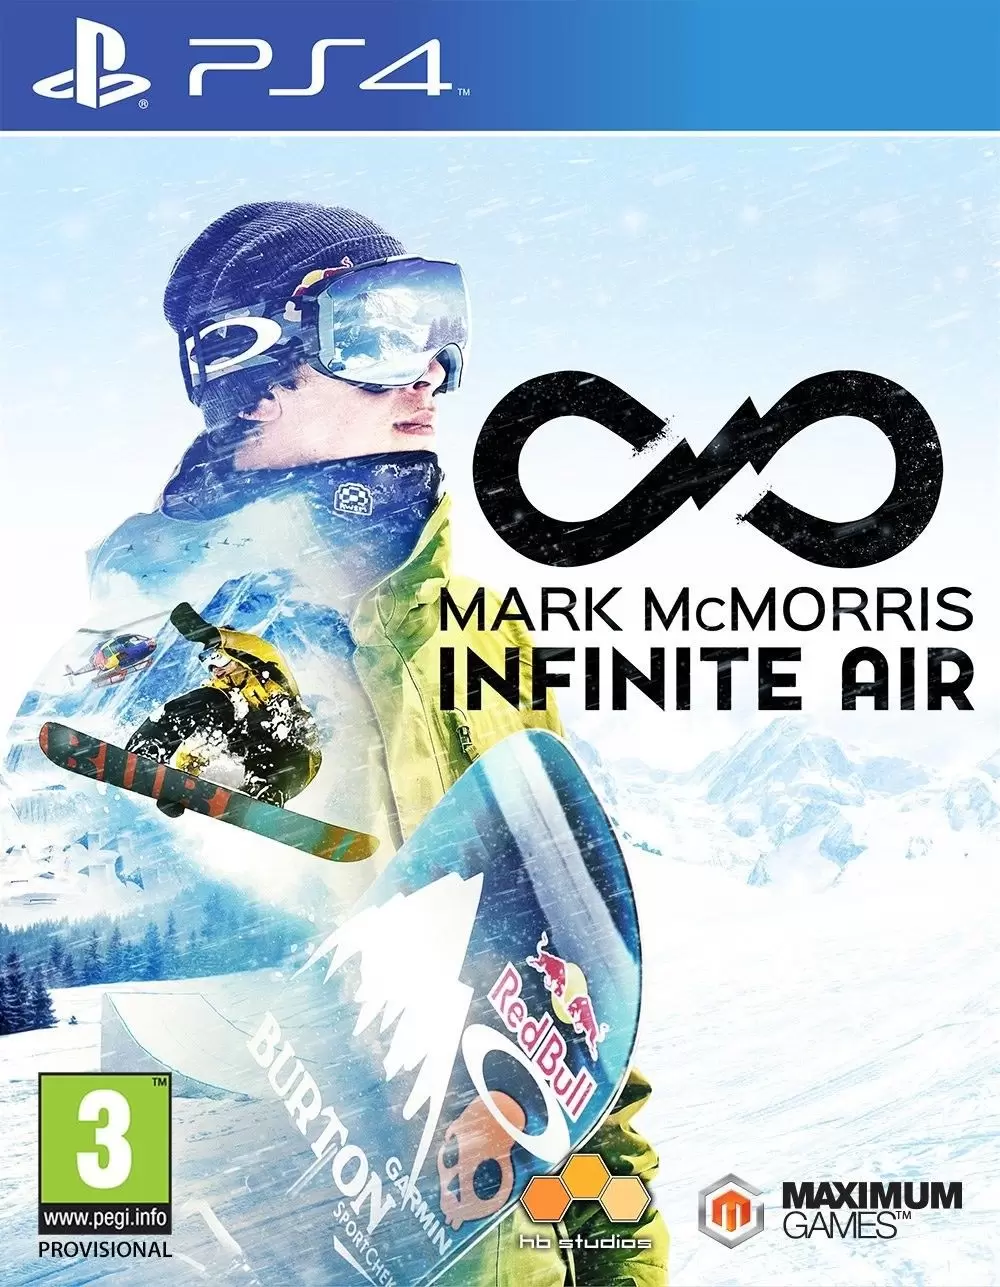 PS4 Games - Mark McMorris Infinite Air